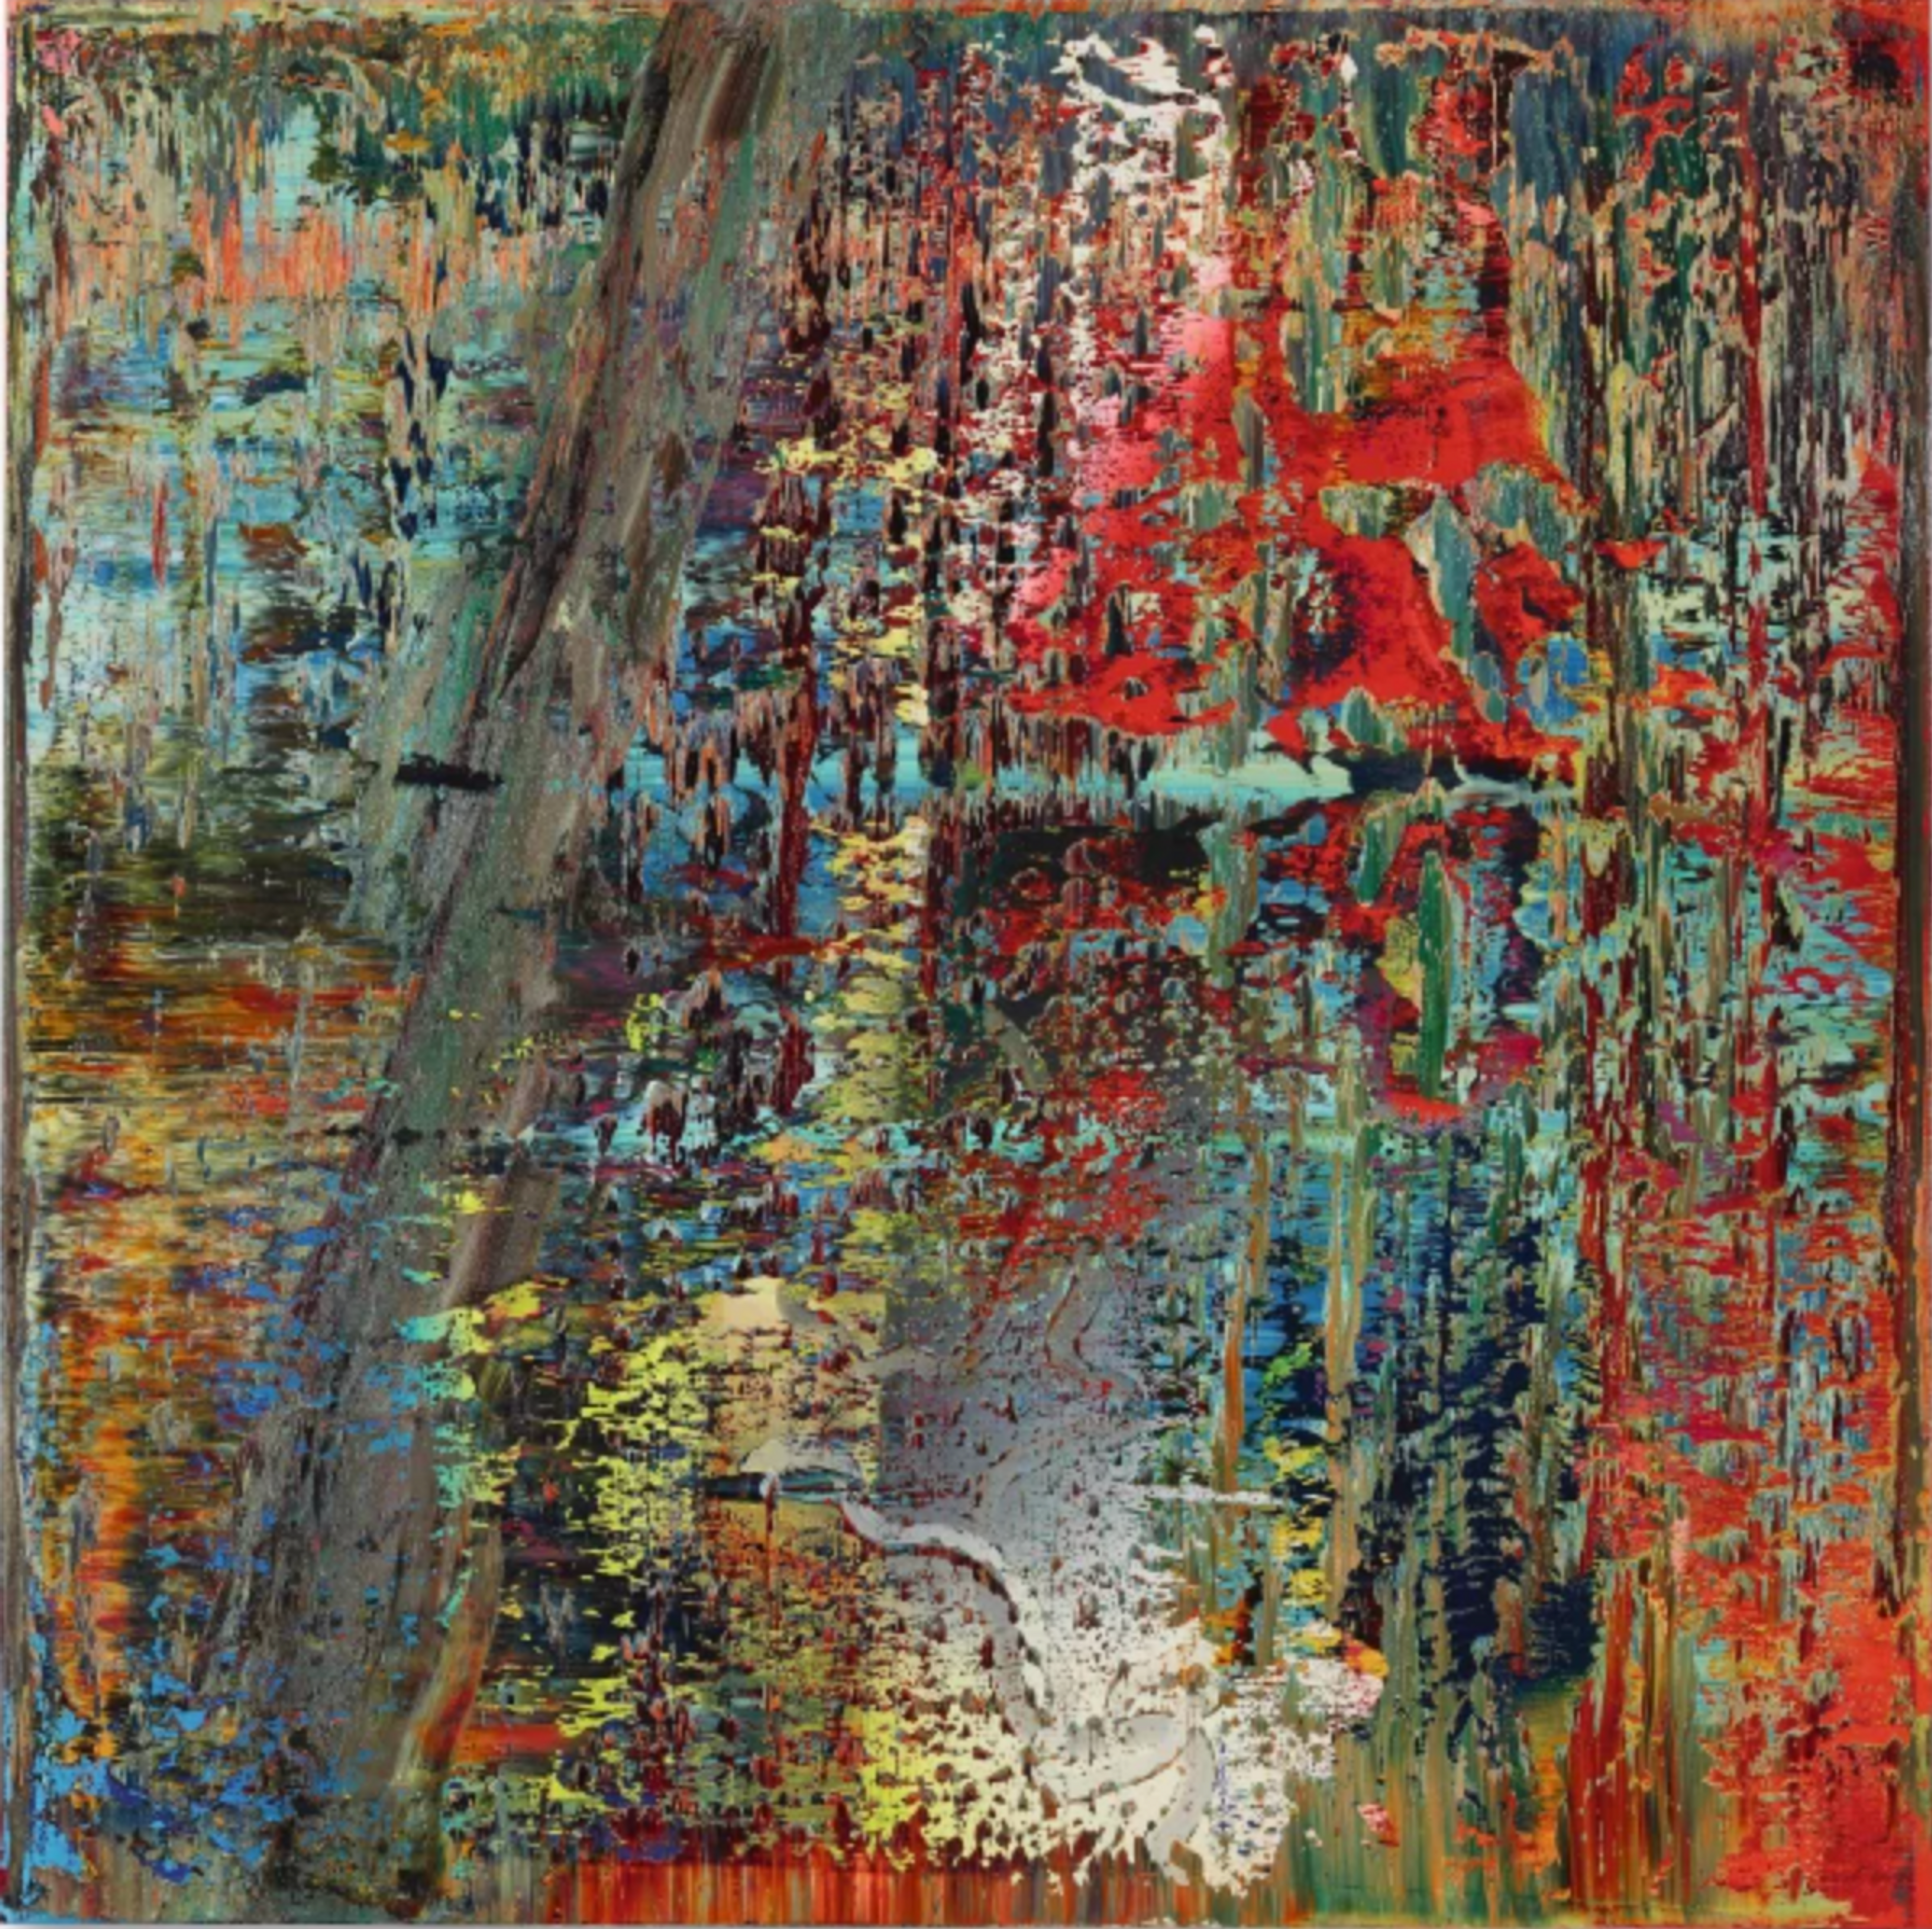 Abstraktes Bild (649-2) by Gerhard Richter